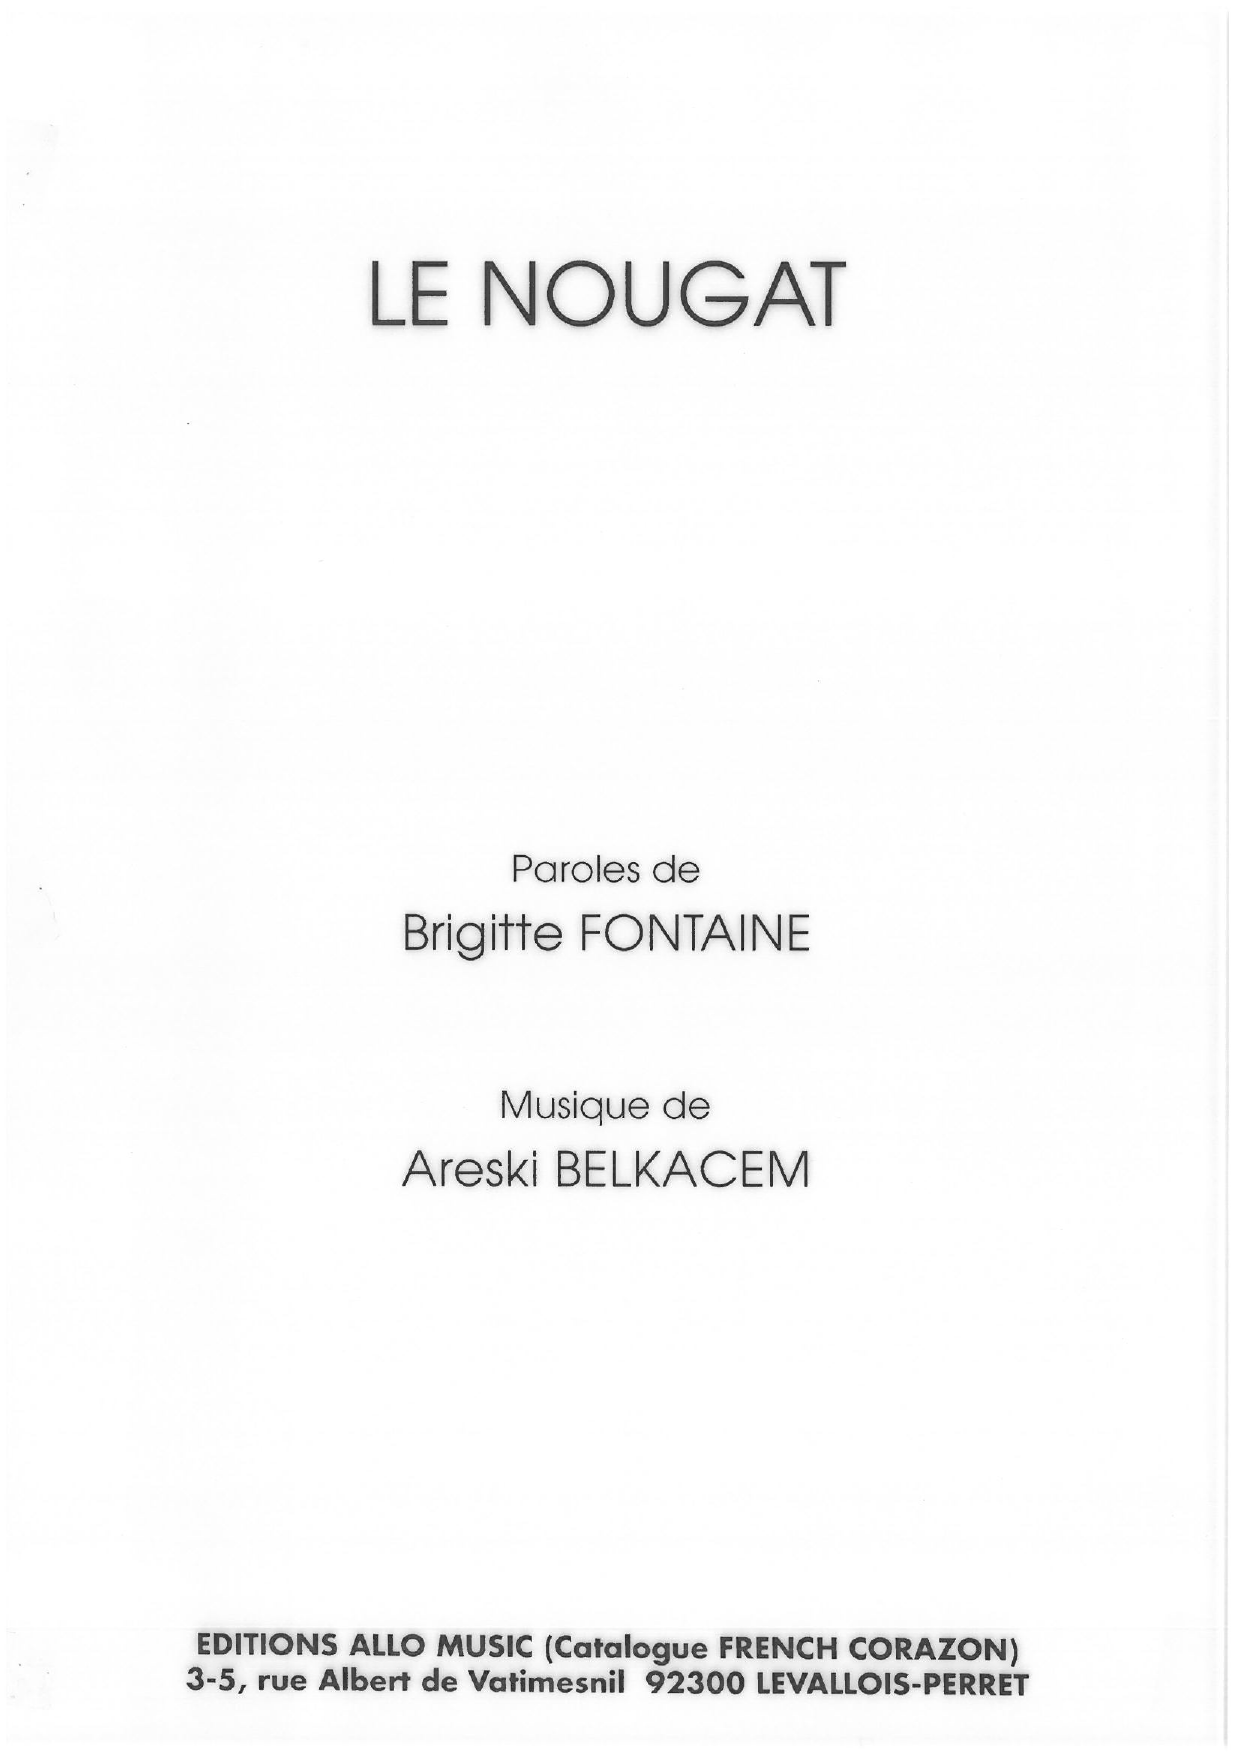 Download Brigitte Fontaine & Areski Belkacem Le Nougat Sheet Music